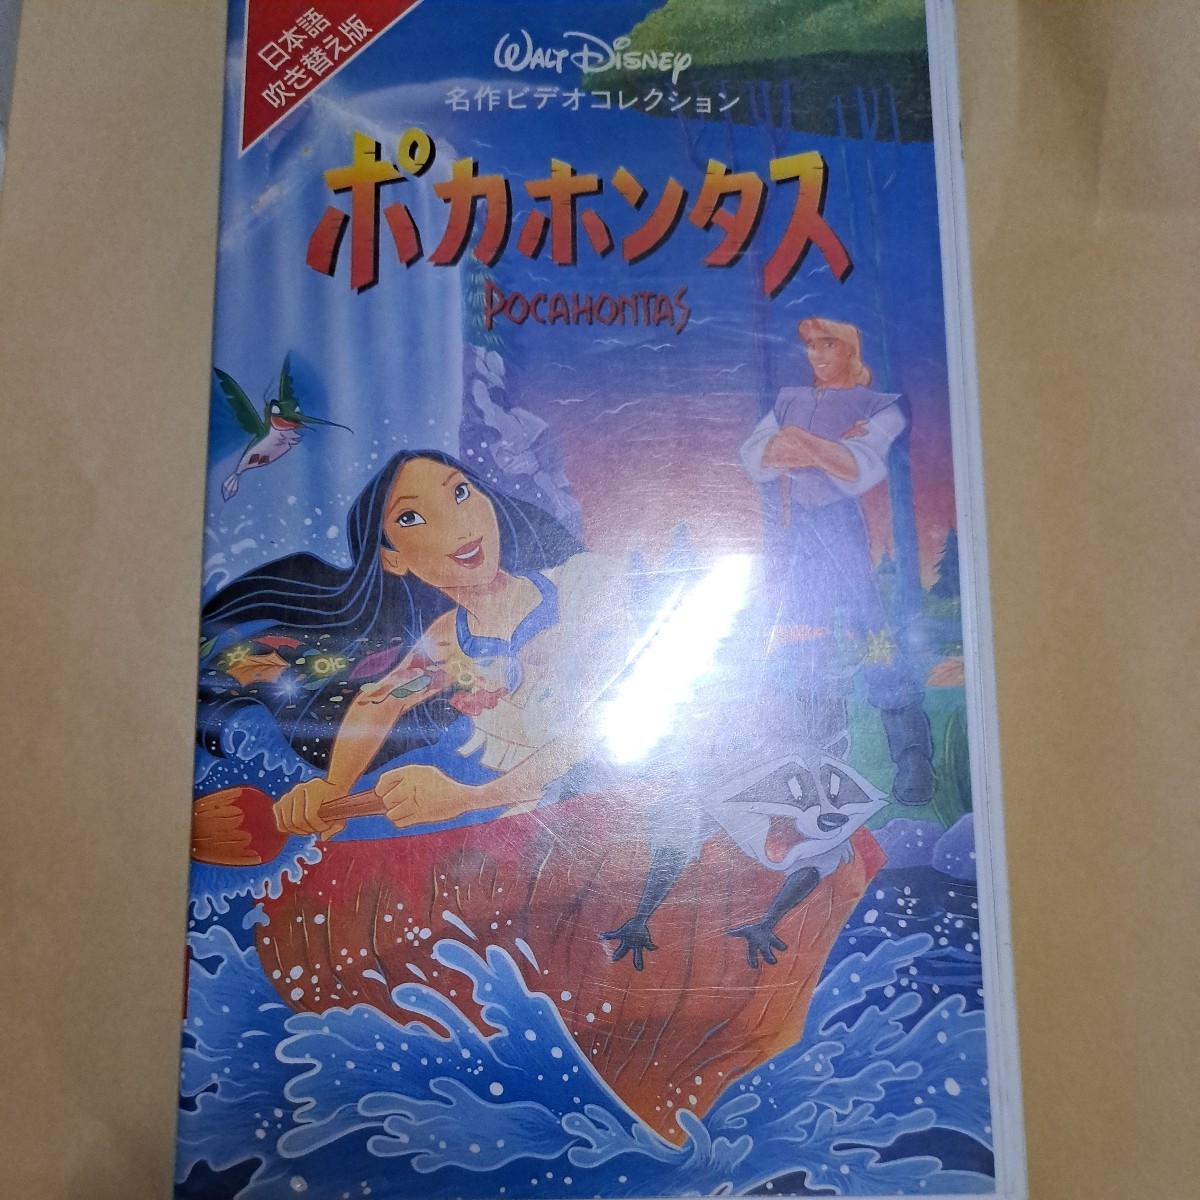  Дисней 　 мультипликация 　...　 японский язык ... издание 　VHS  видео   лента  　